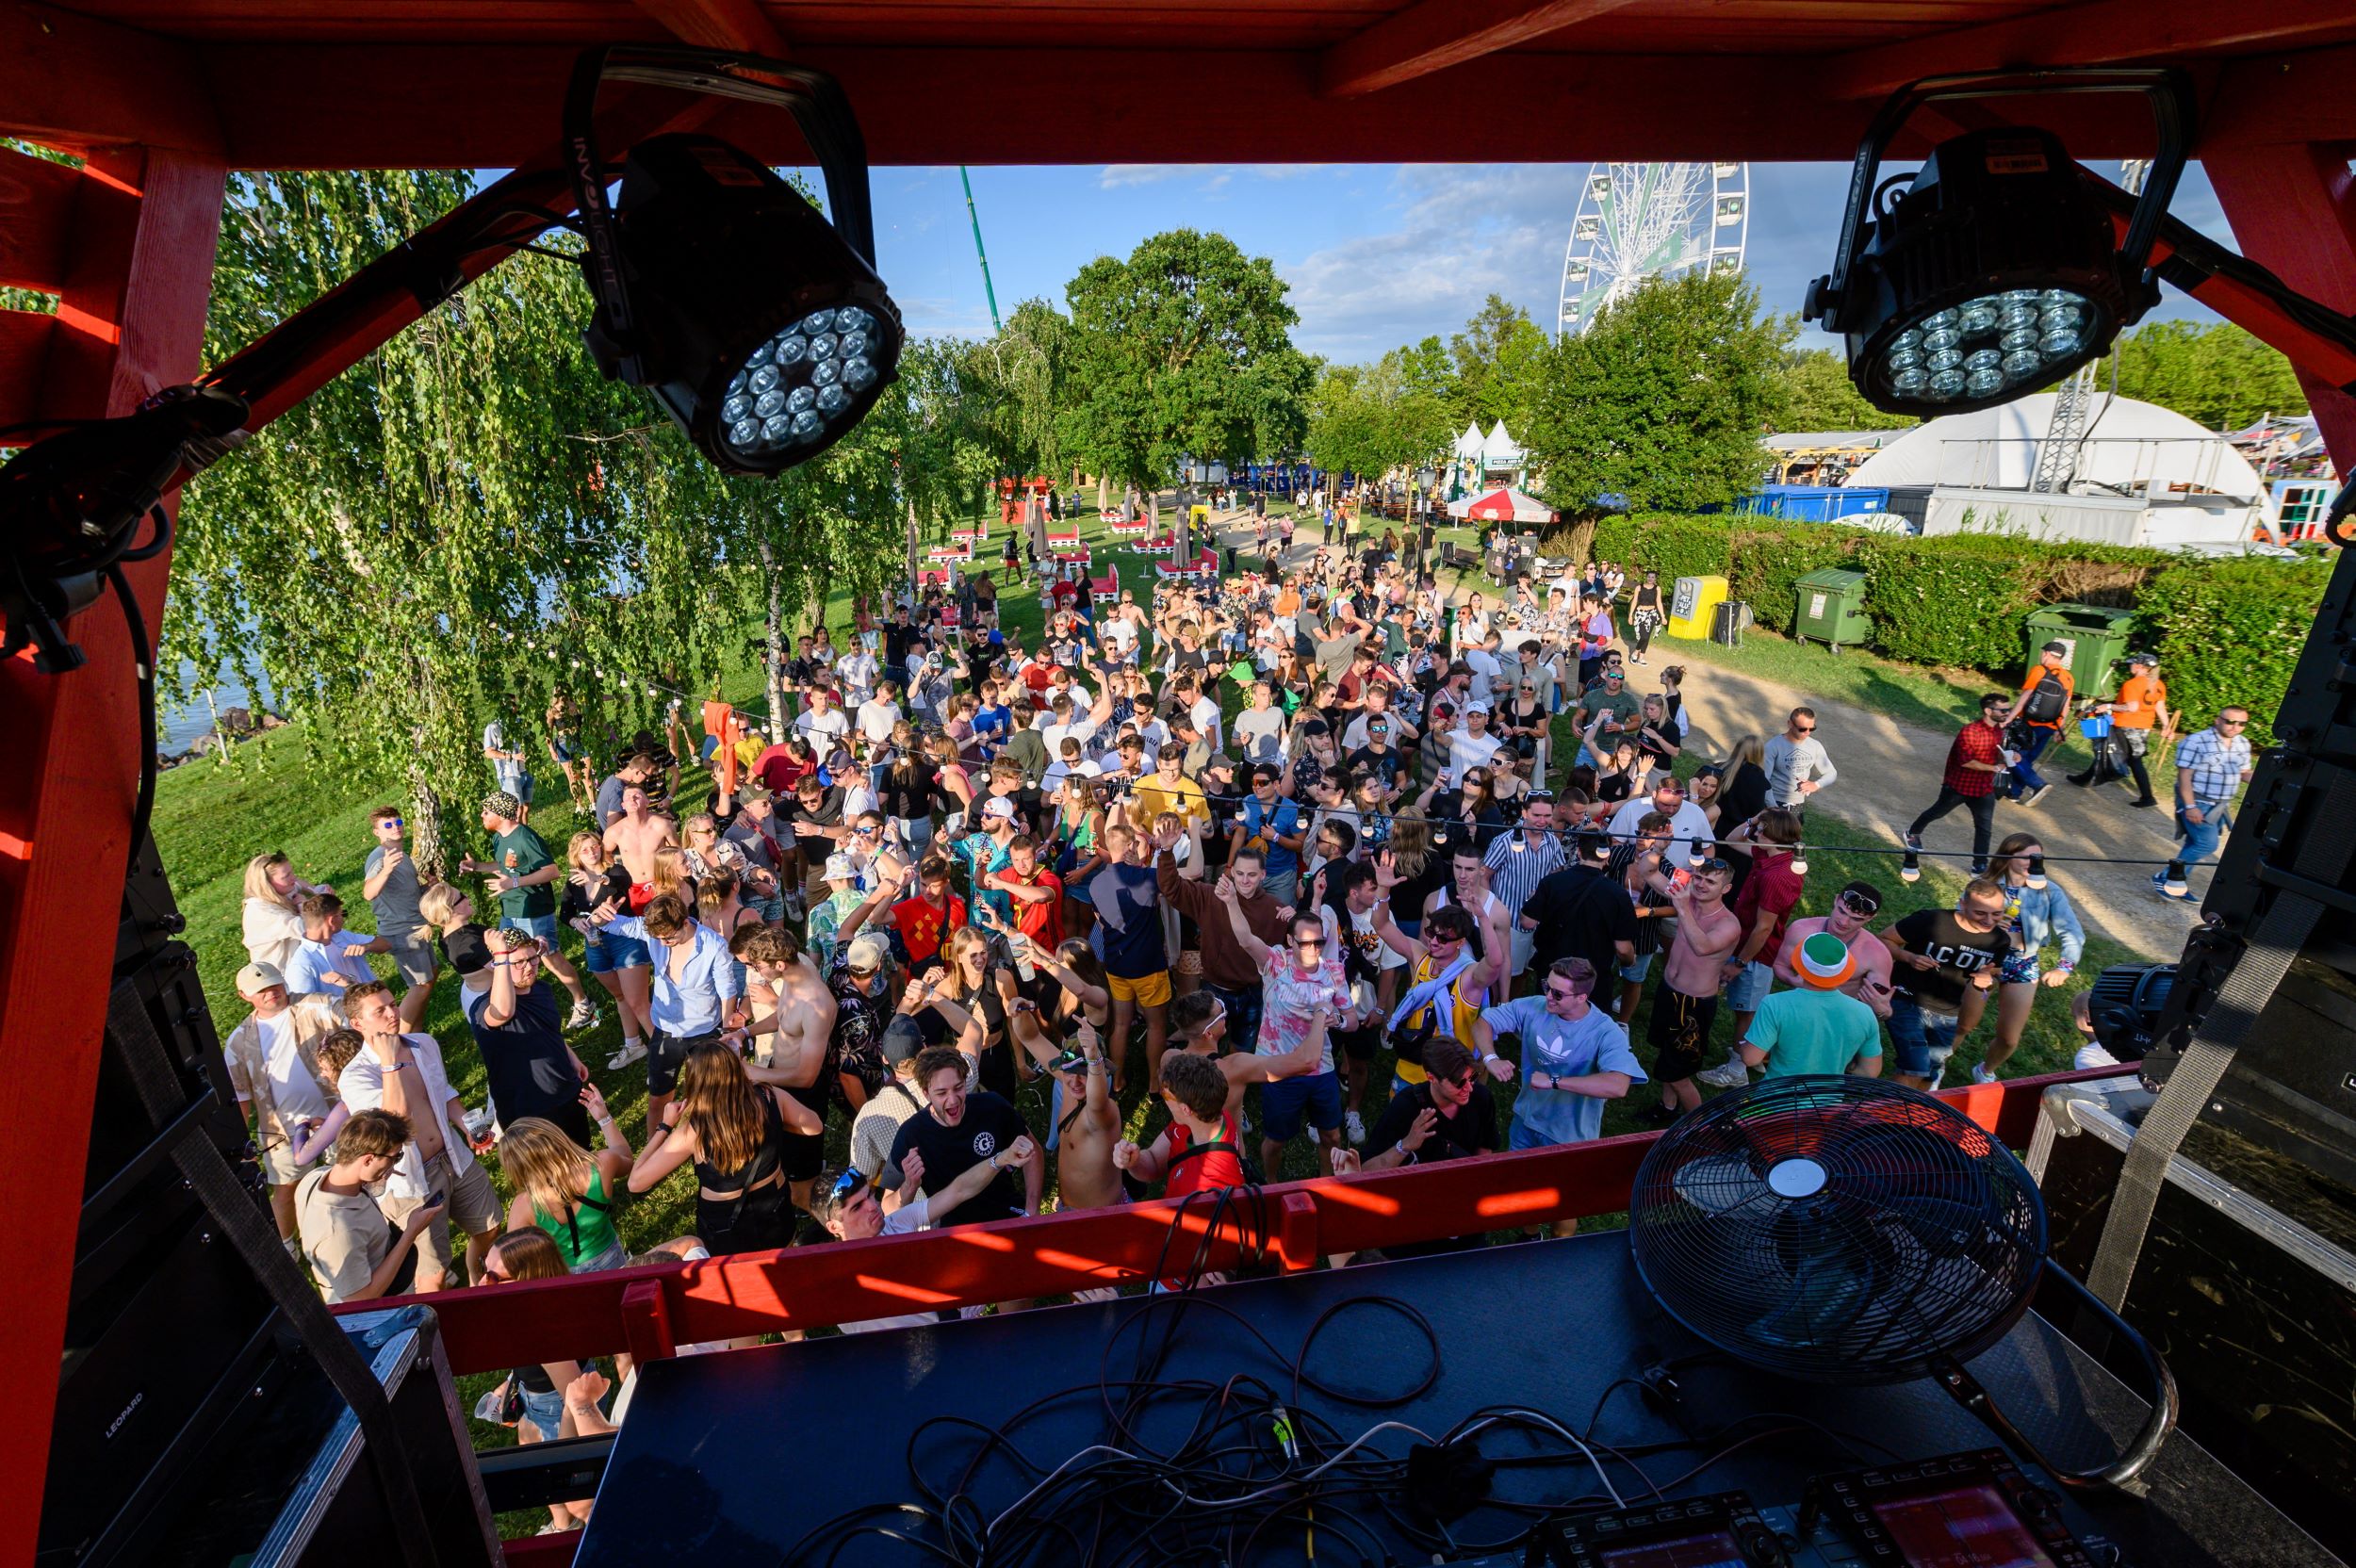 Fesztiválozók a Balaton Sound fesztivál nyitónapján Zamárdiban